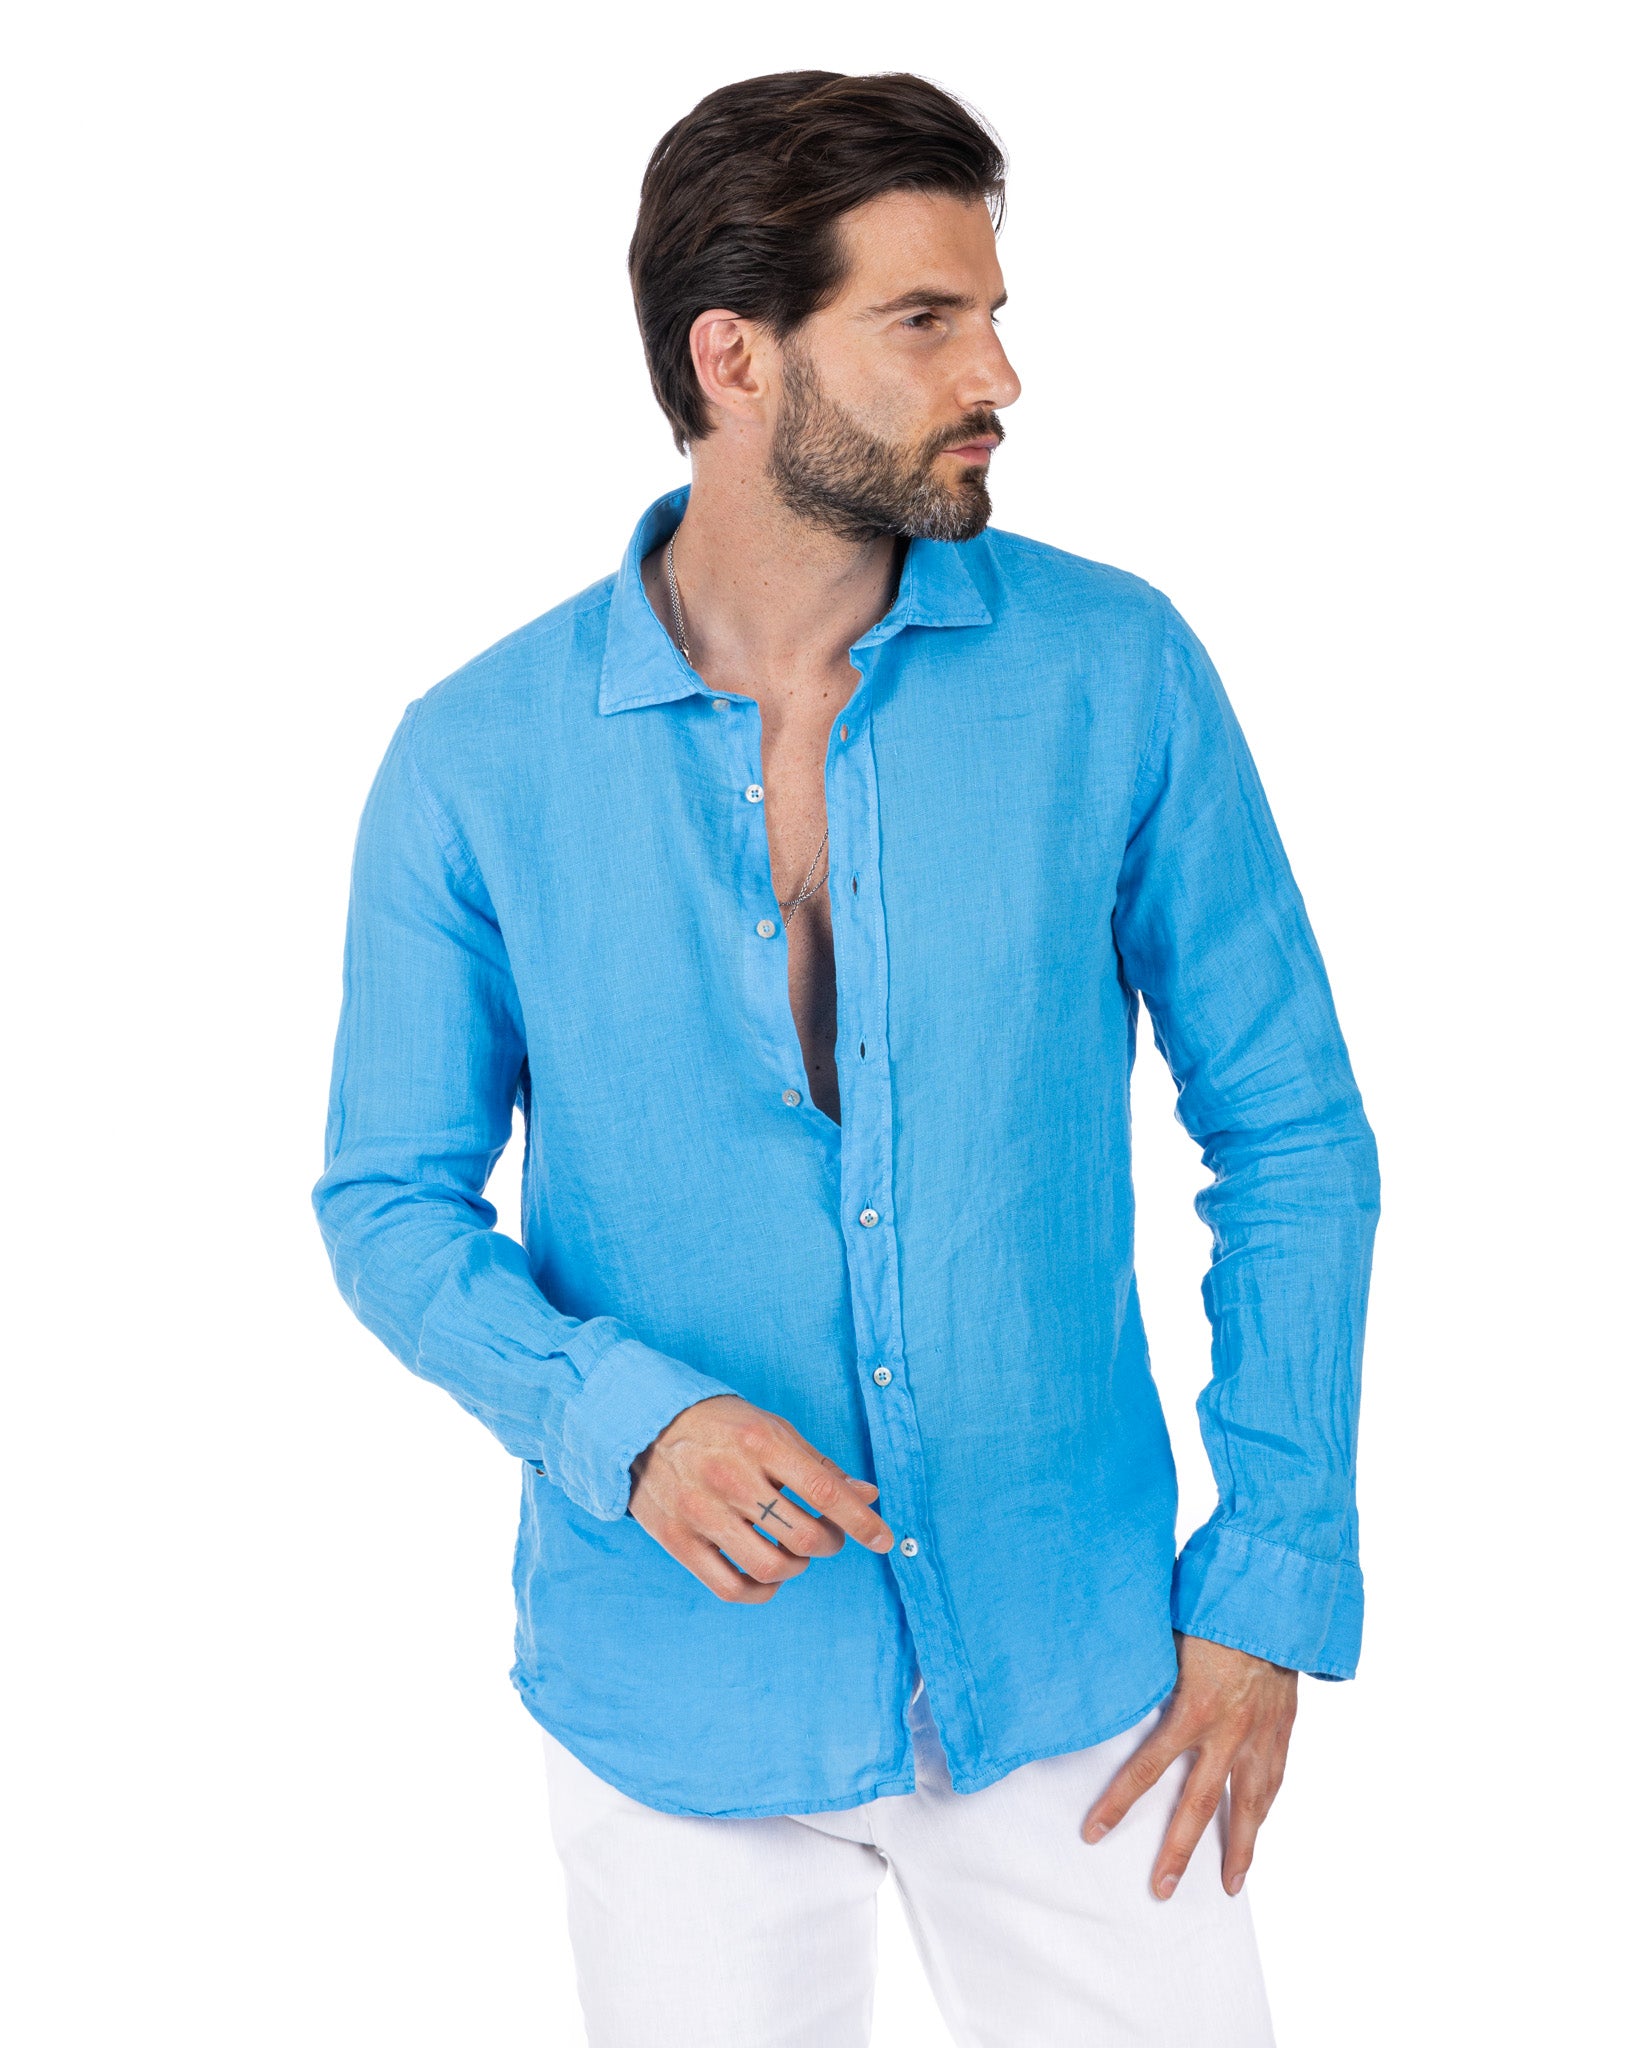 Montecarlo - camicia in puro lino turchese